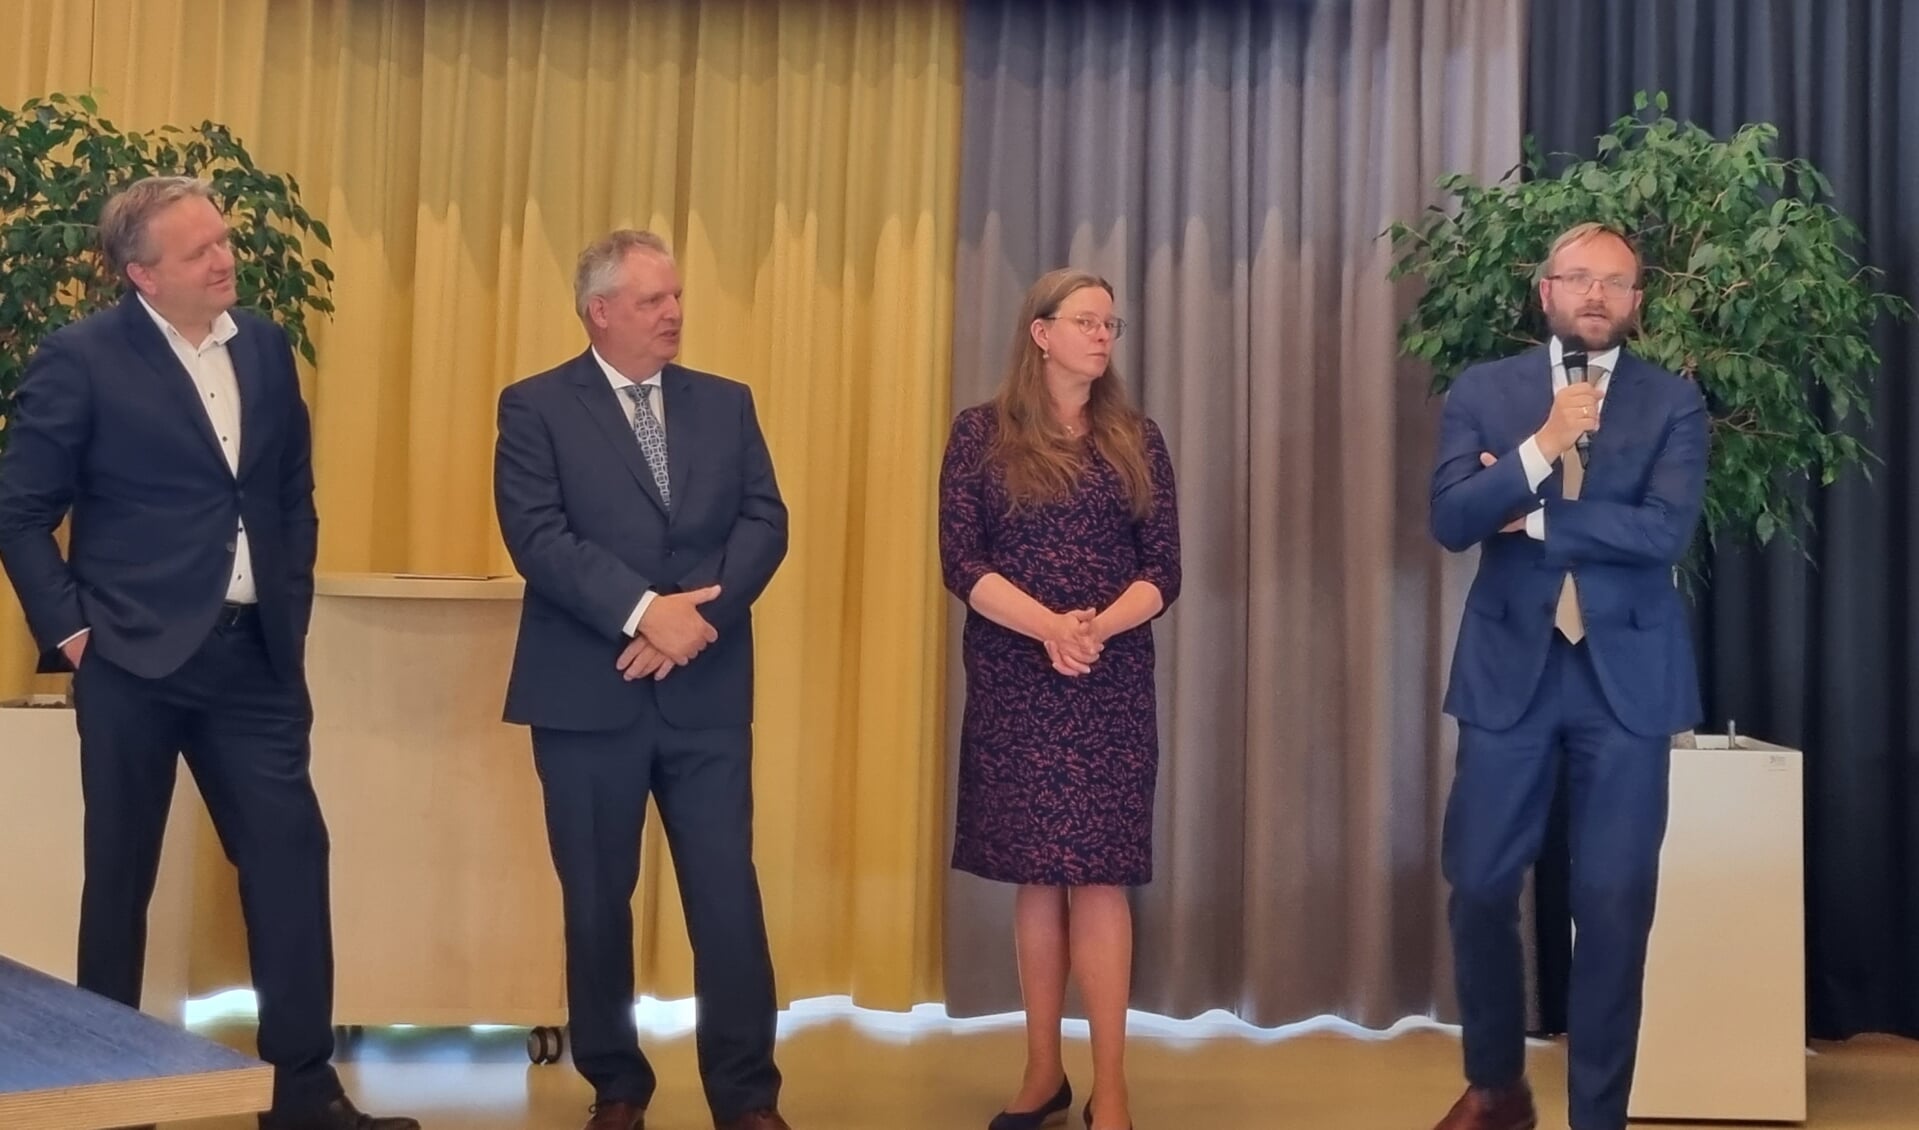 De vier nieuwe kandidaat-wethouders van Berkelland met (vlnr) Arjen van Gijssel, Hans van der Noordt, Betsie Wormgoor en Gerjan Teselink. Foto: Rob Weeber